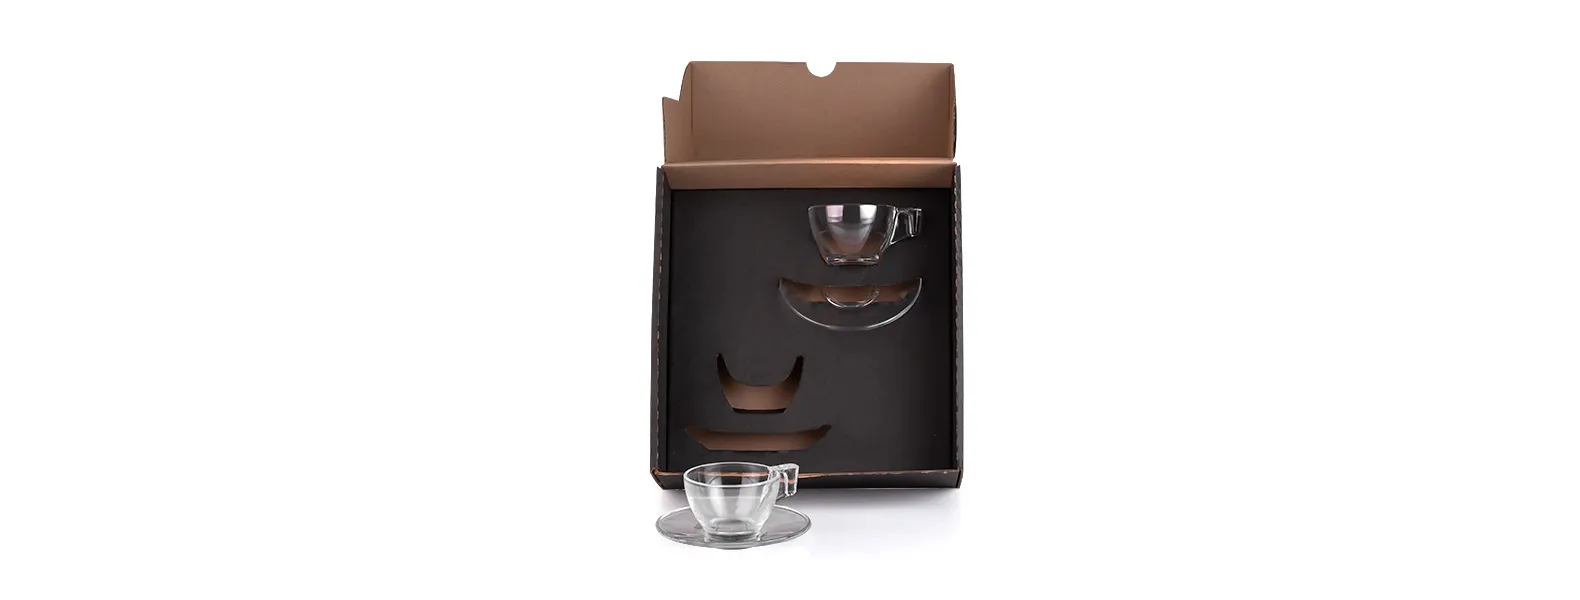 Jogo de xícaras. Kit para café contendo duas xícaras com pires em vidro. Capacidade: 90 ml cada xícara.